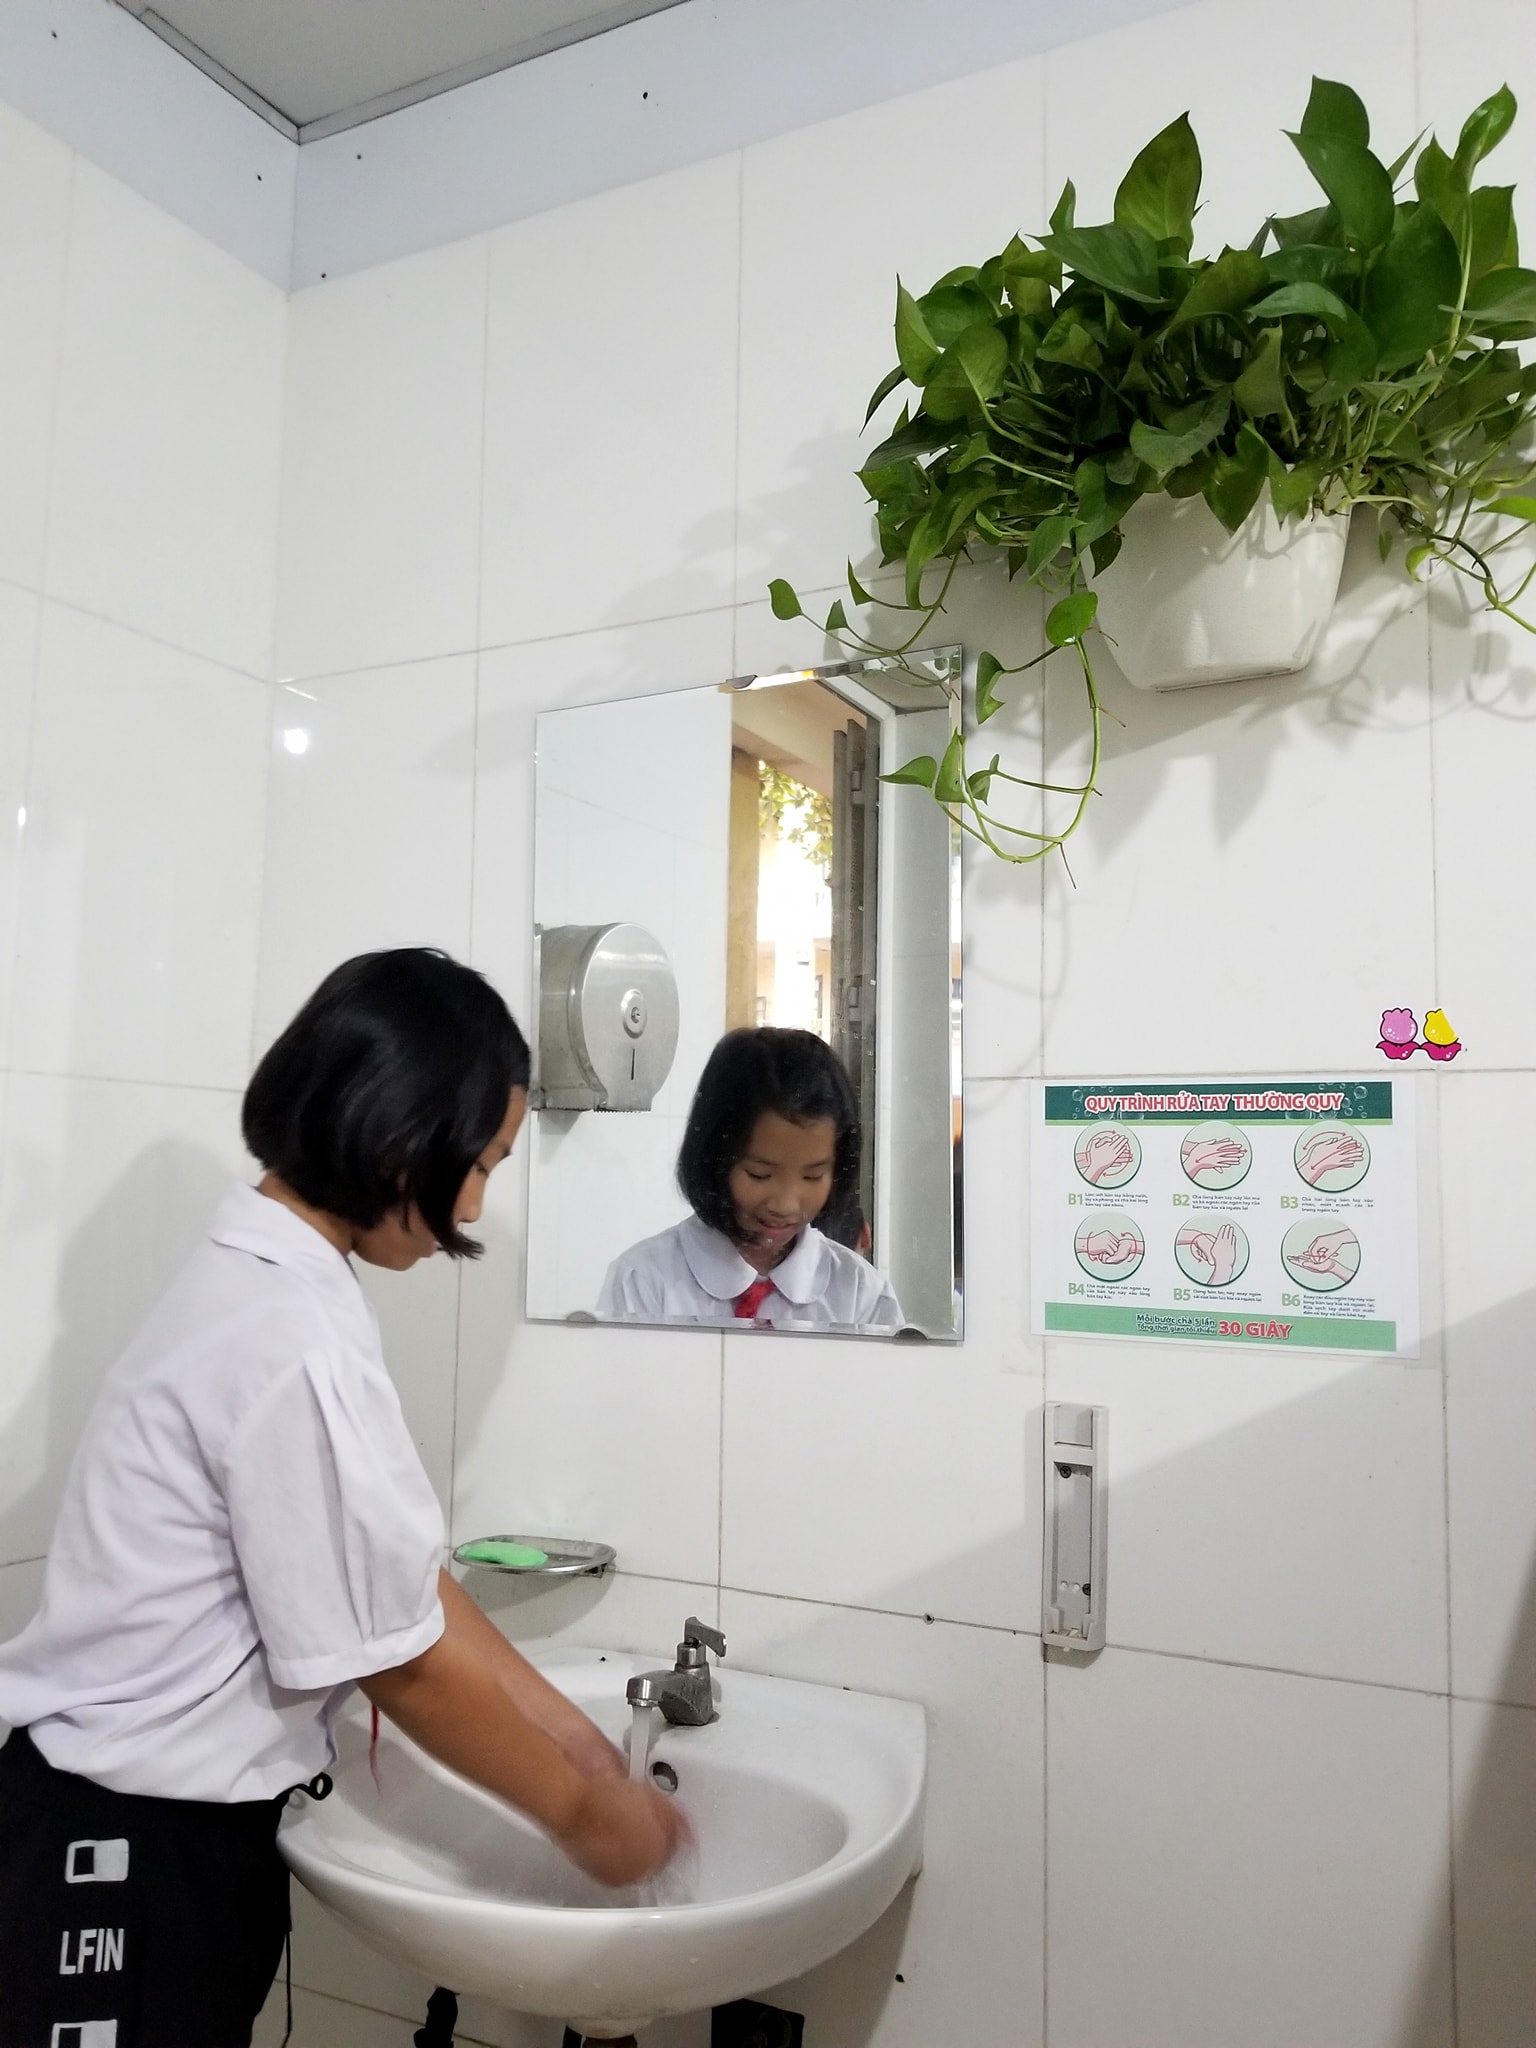 Nhà vệ sinh thân thiện trong trường học  BÁO QUẢNG NAM ONLINE  Tin tức  mới nhất